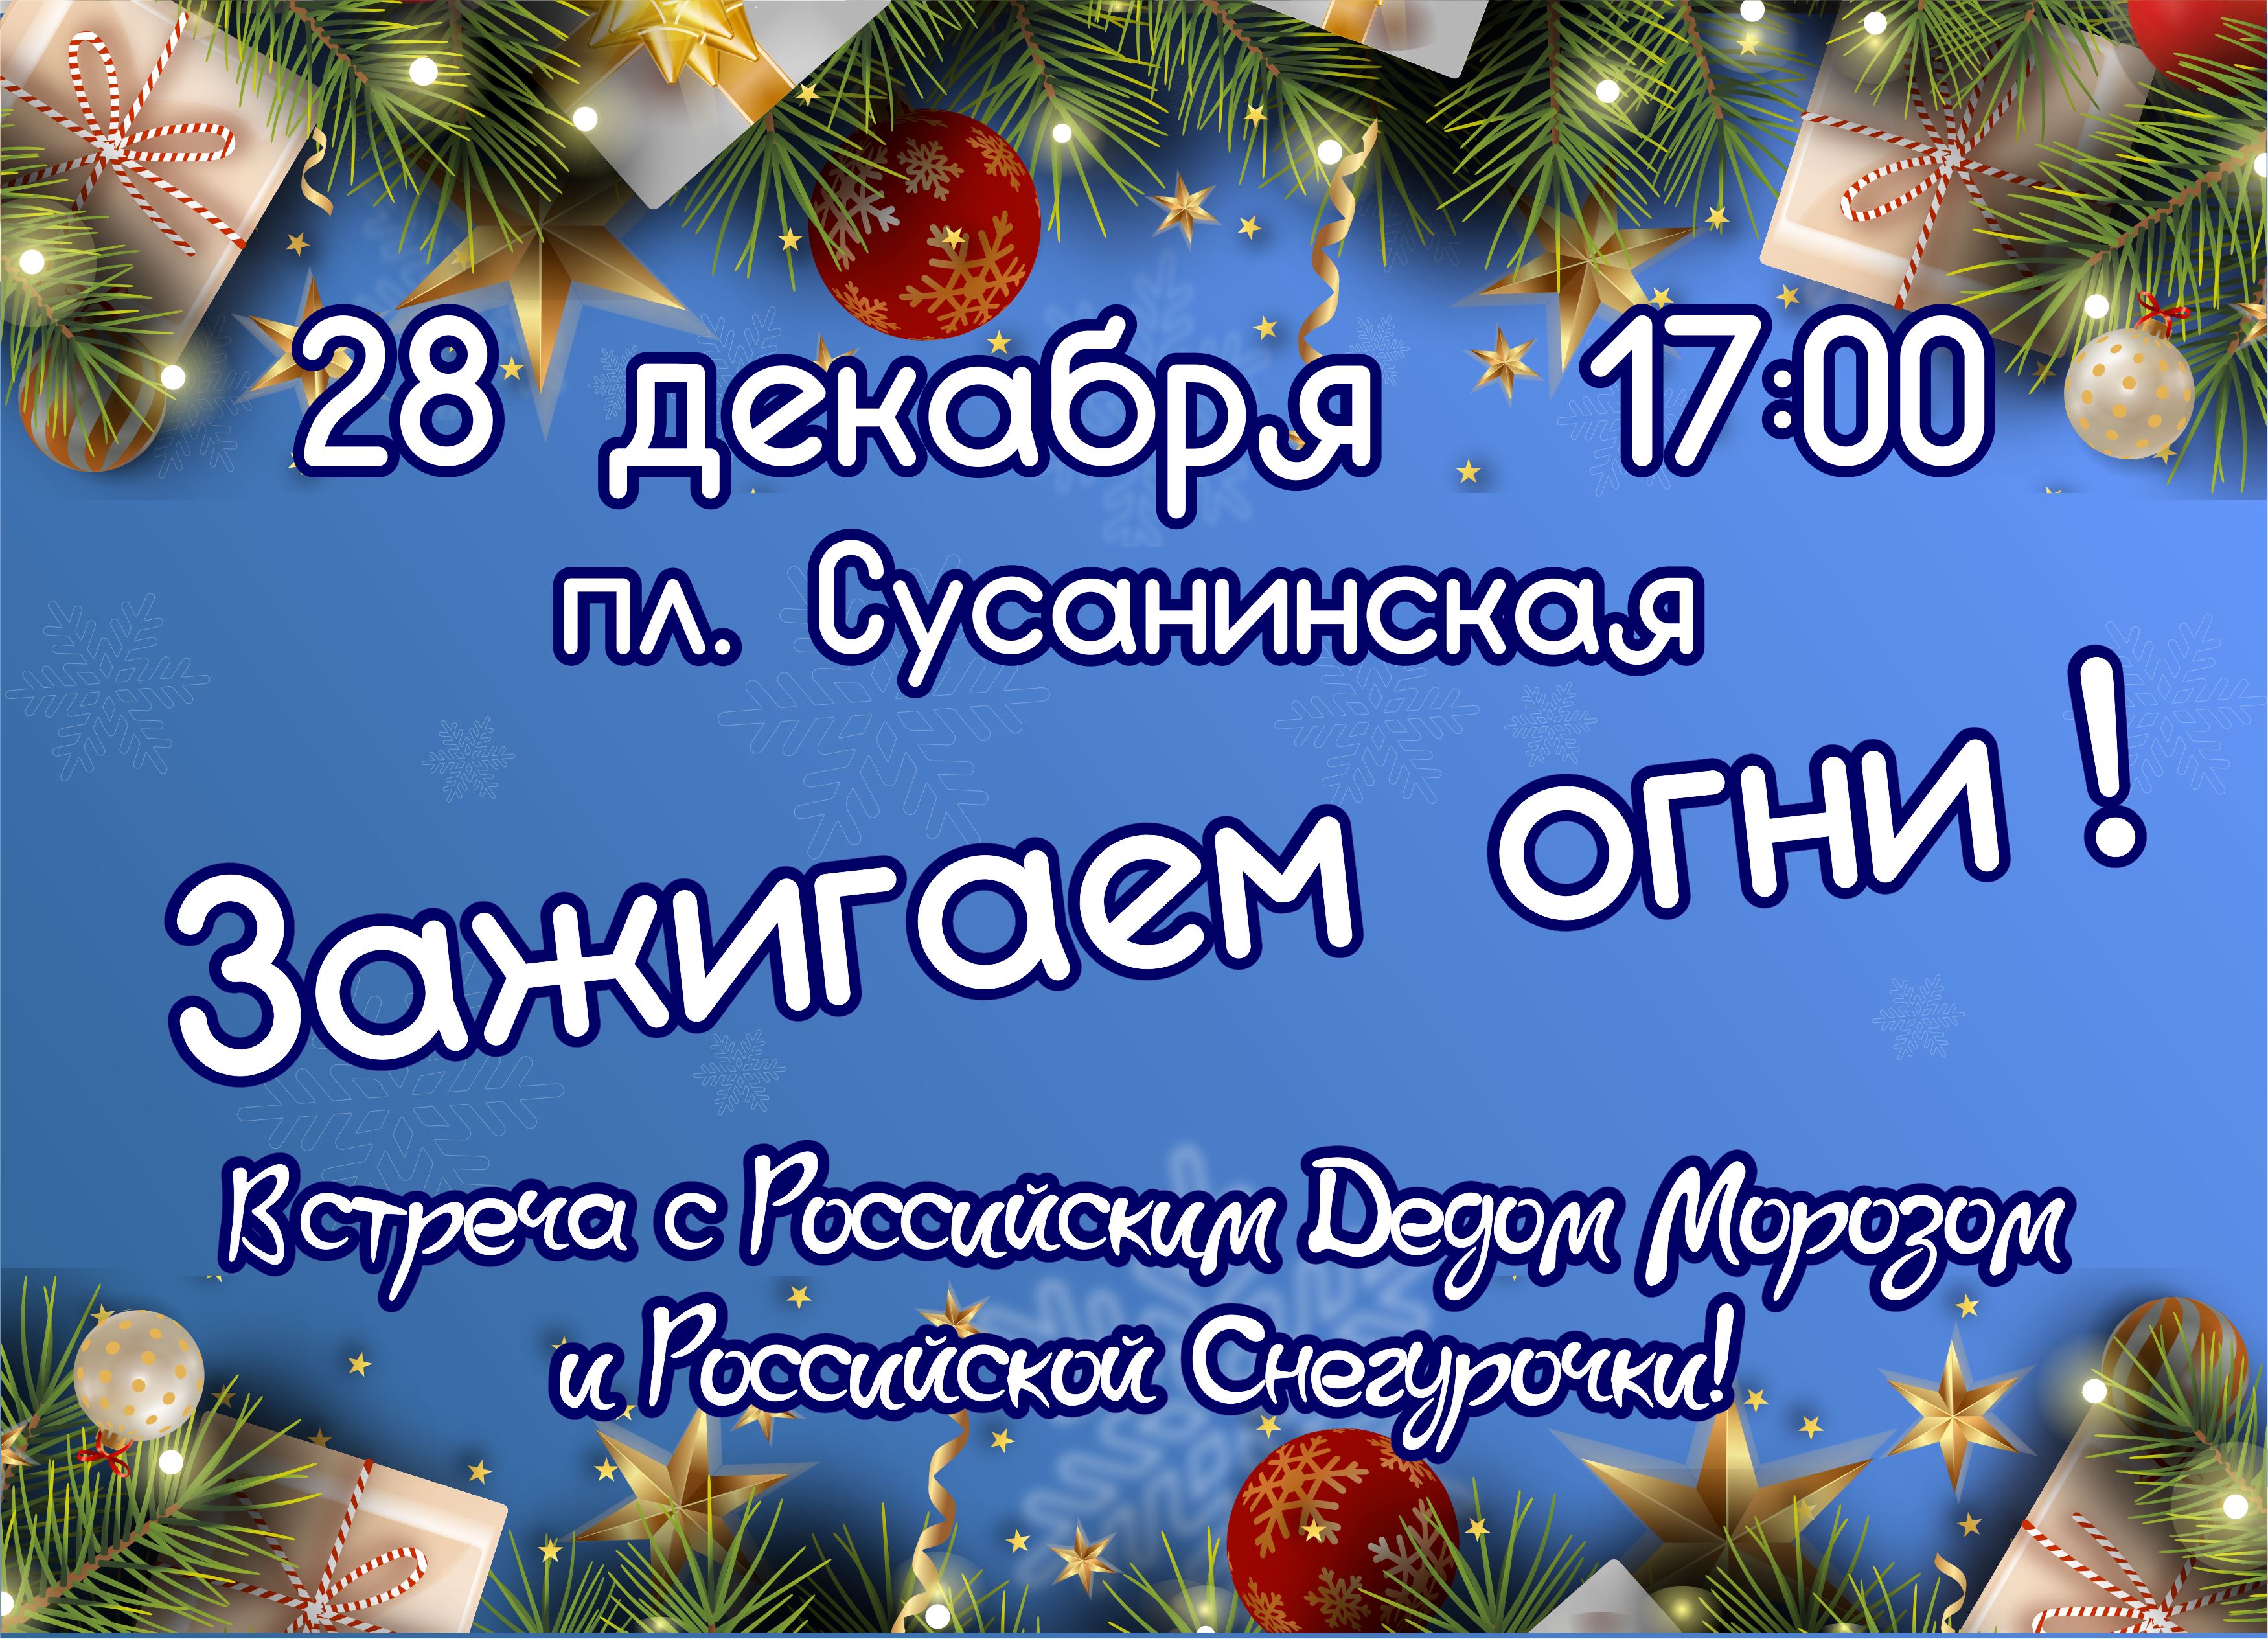 Дед Мороз и Российская Снегурочка зажгут новогодние огни на главной елке Костромы 28 декабря